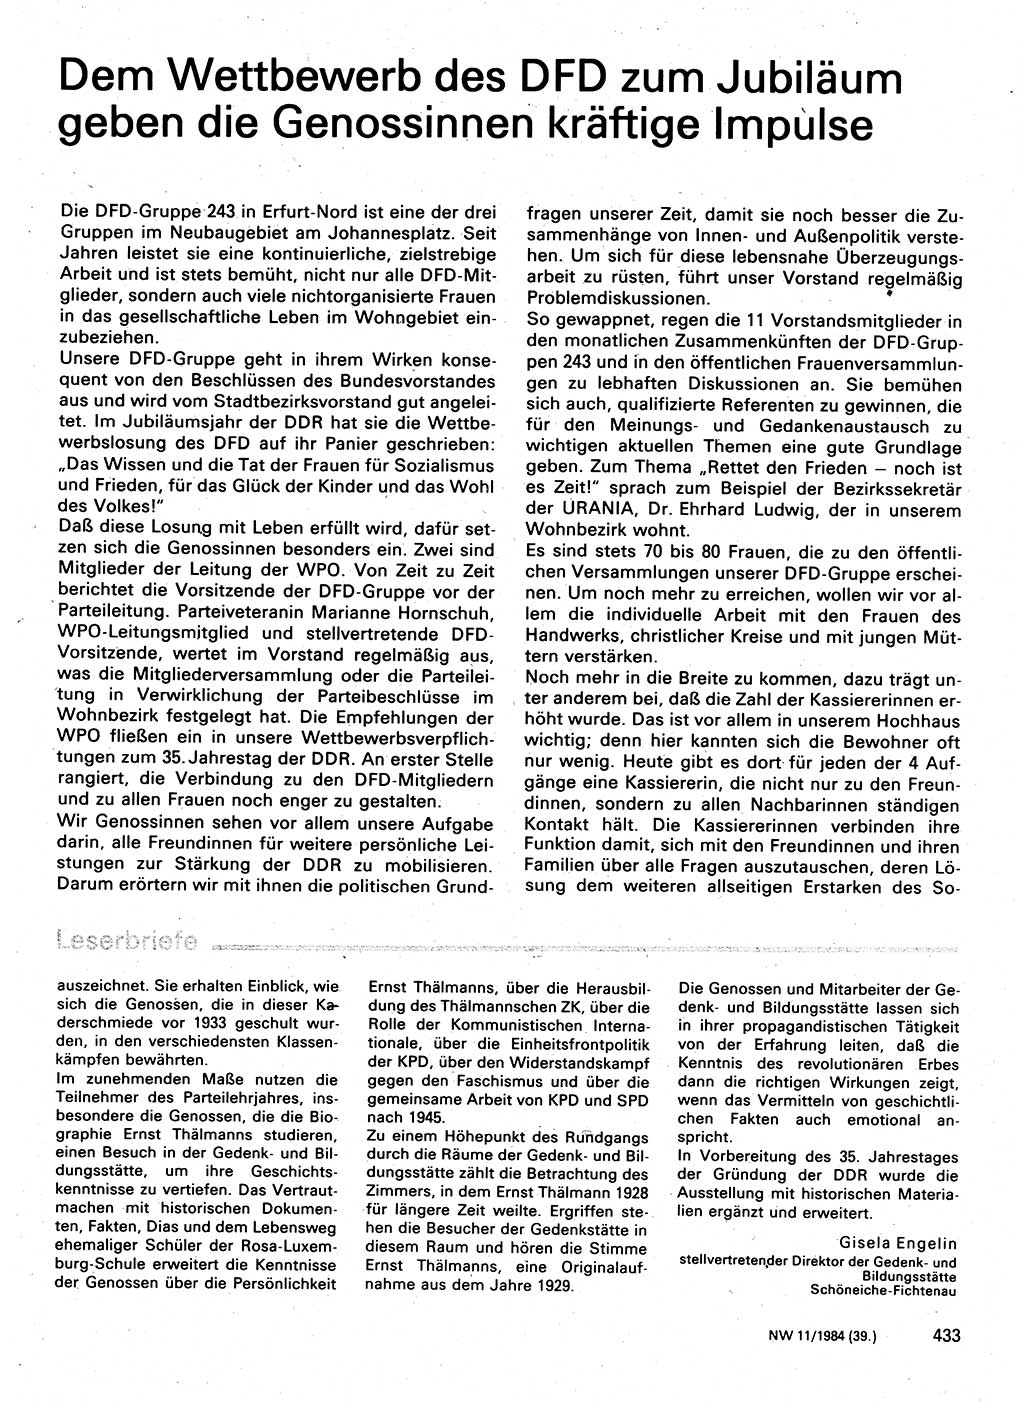 Neuer Weg (NW), Organ des Zentralkomitees (ZK) der SED (Sozialistische Einheitspartei Deutschlands) für Fragen des Parteilebens, 39. Jahrgang [Deutsche Demokratische Republik (DDR)] 1984, Seite 433 (NW ZK SED DDR 1984, S. 433)